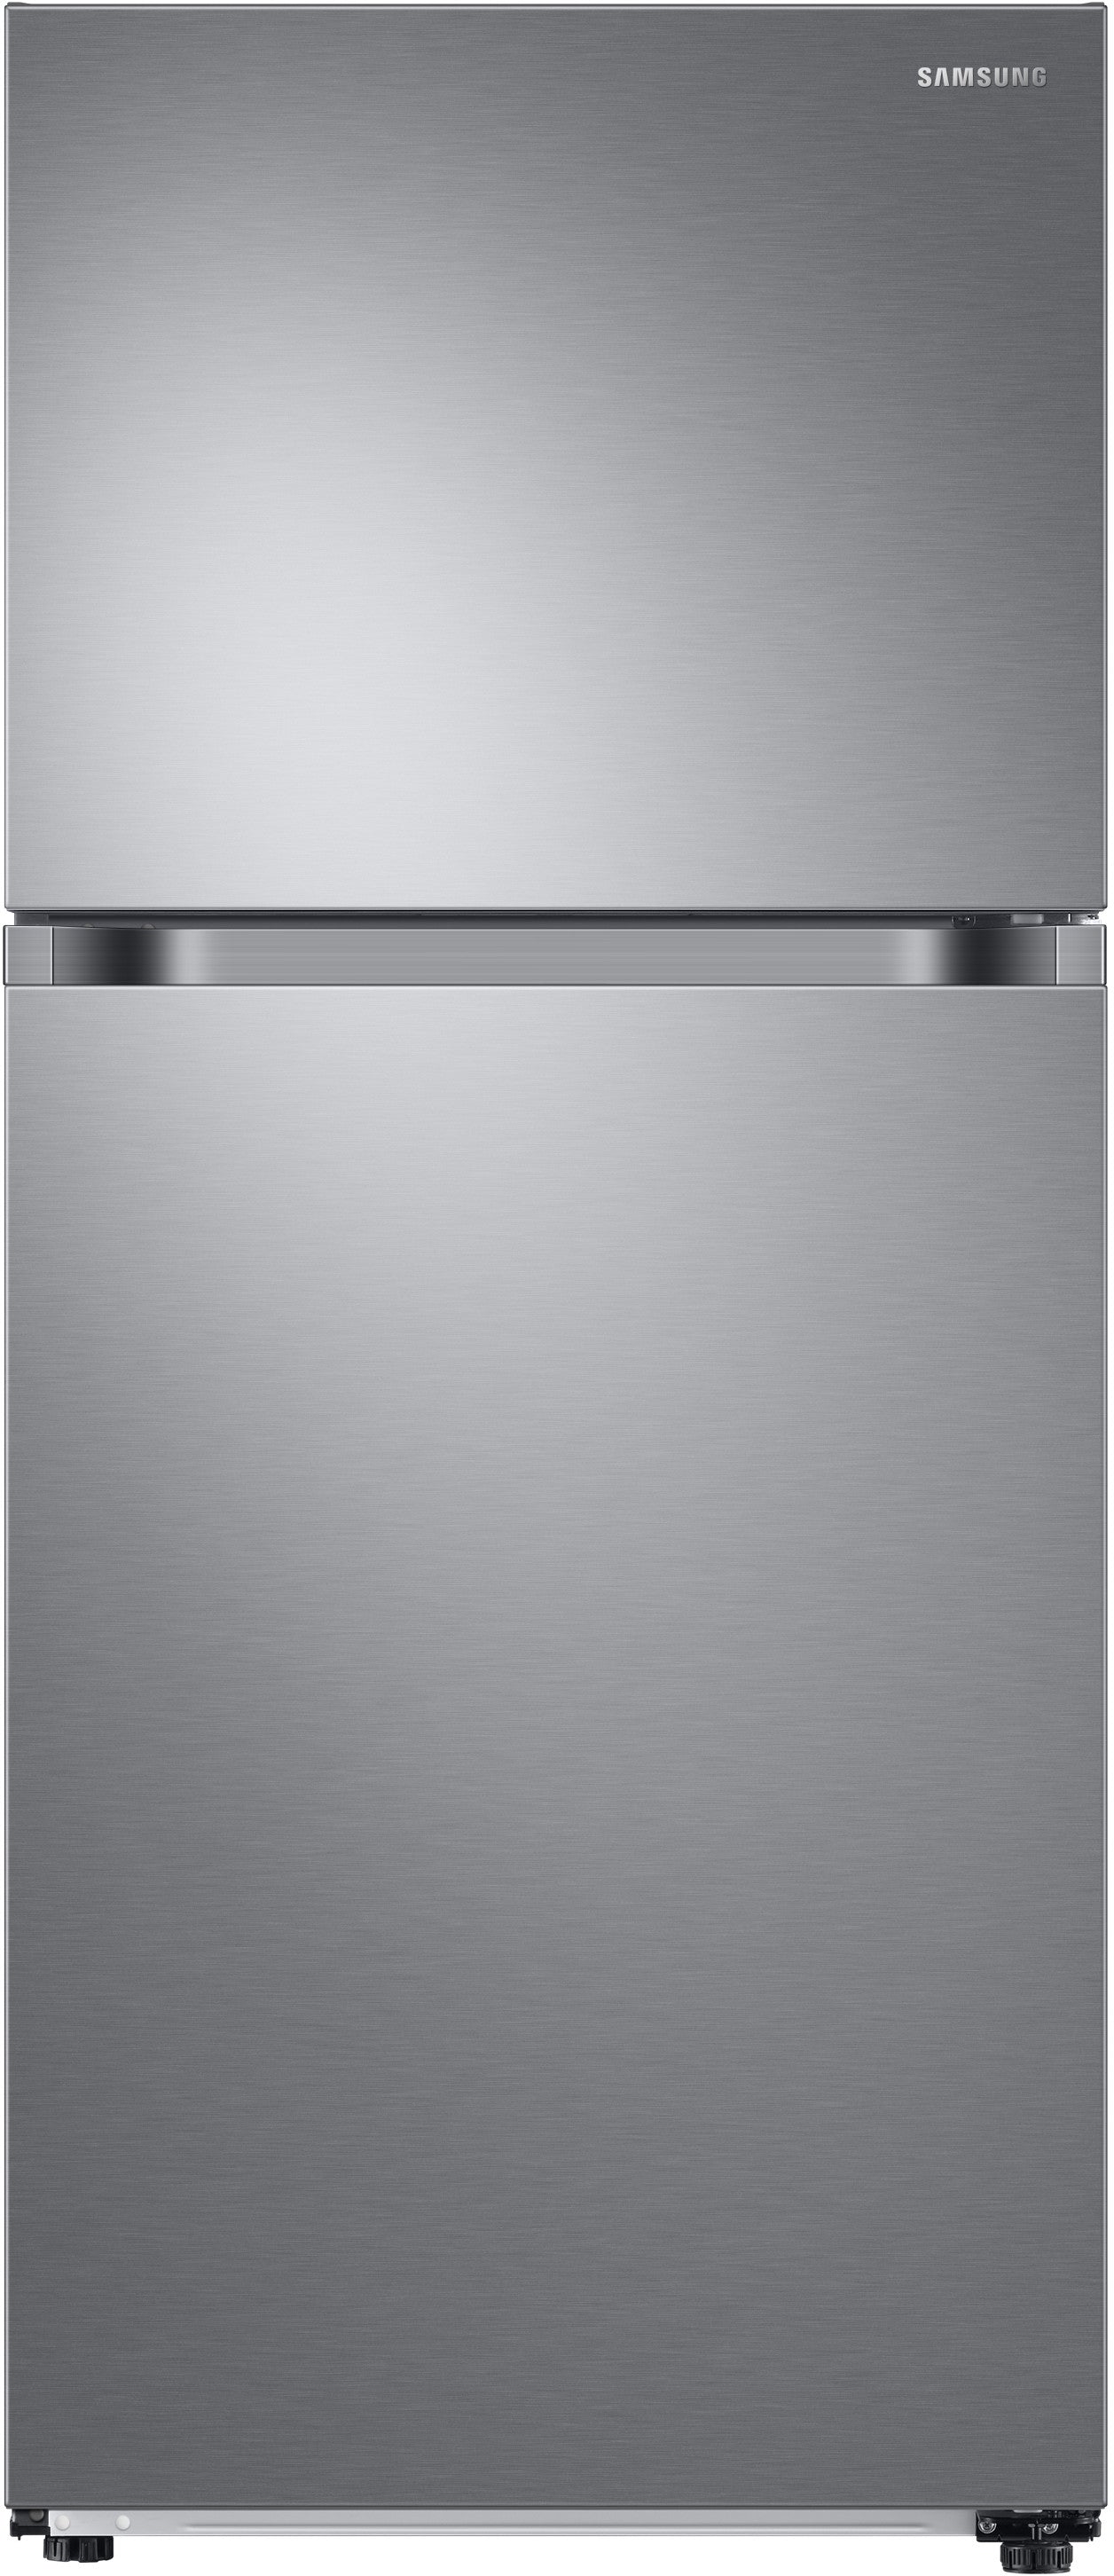 Samsung DA97-15409G Refrigerator Cover